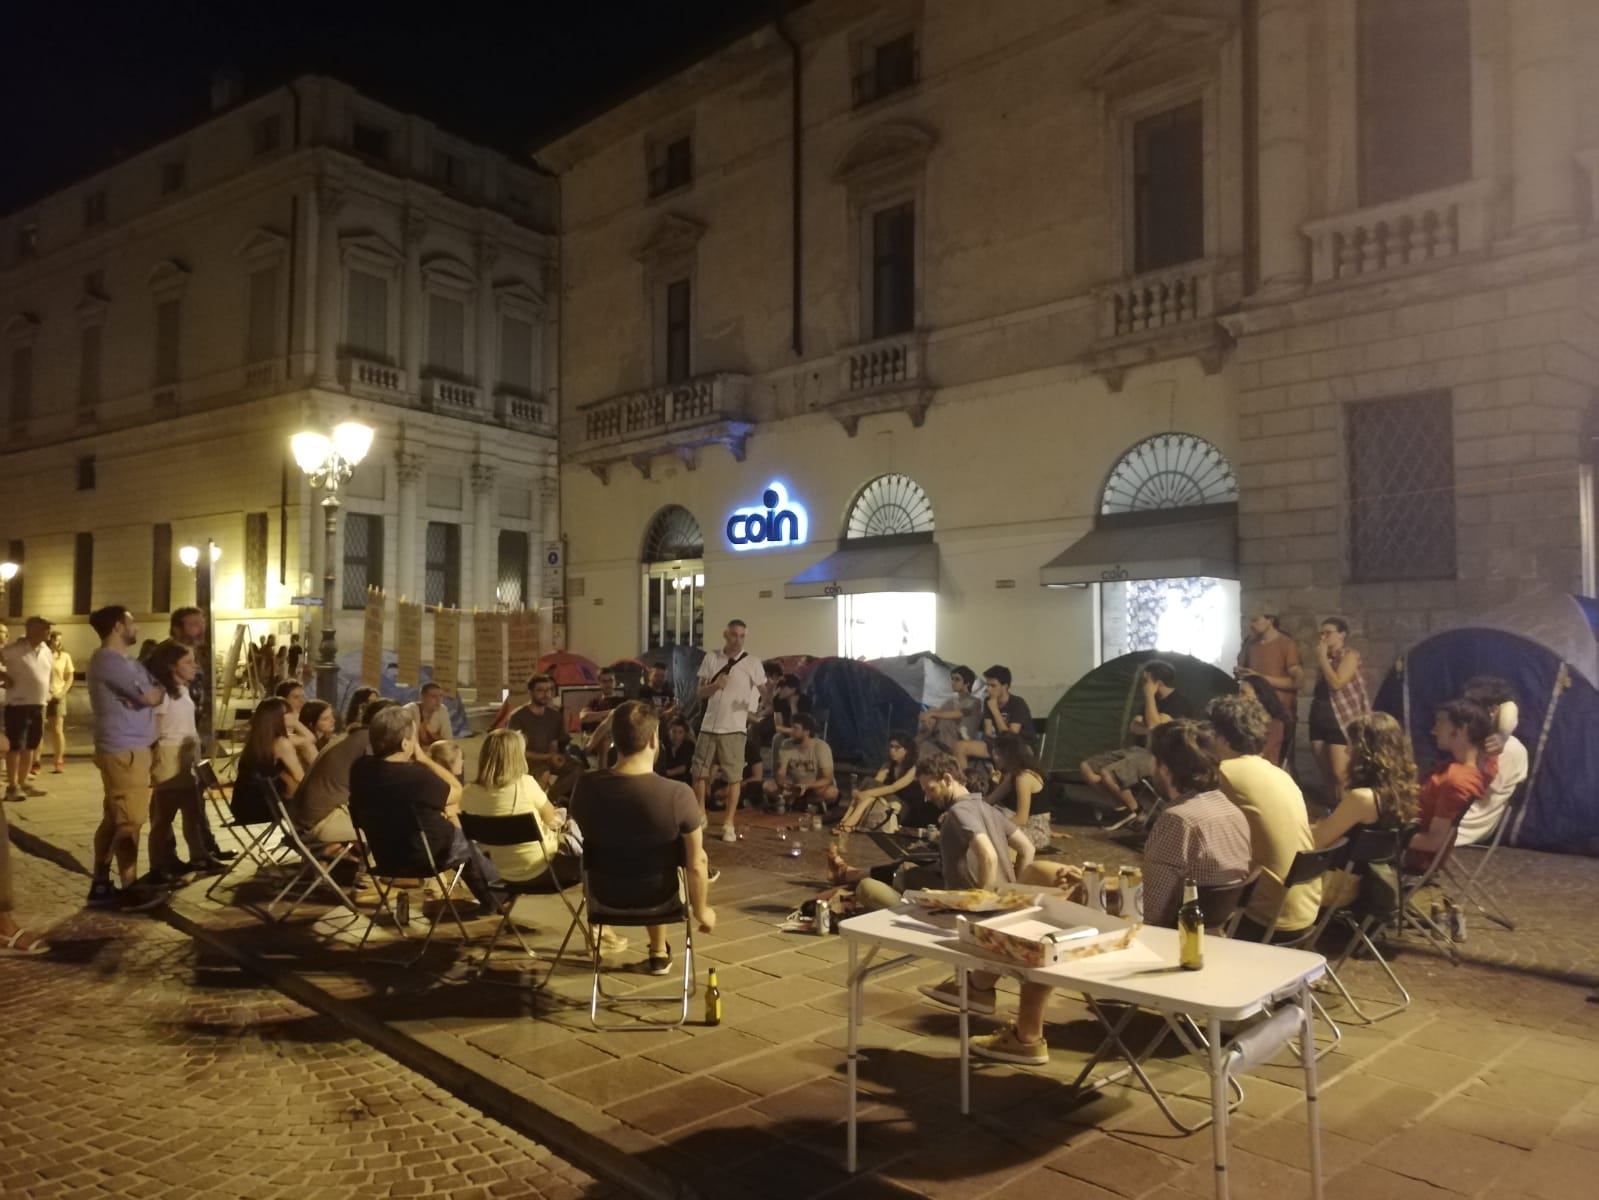 Accampada in Piazza Castello, Vicenza 14-06-2019